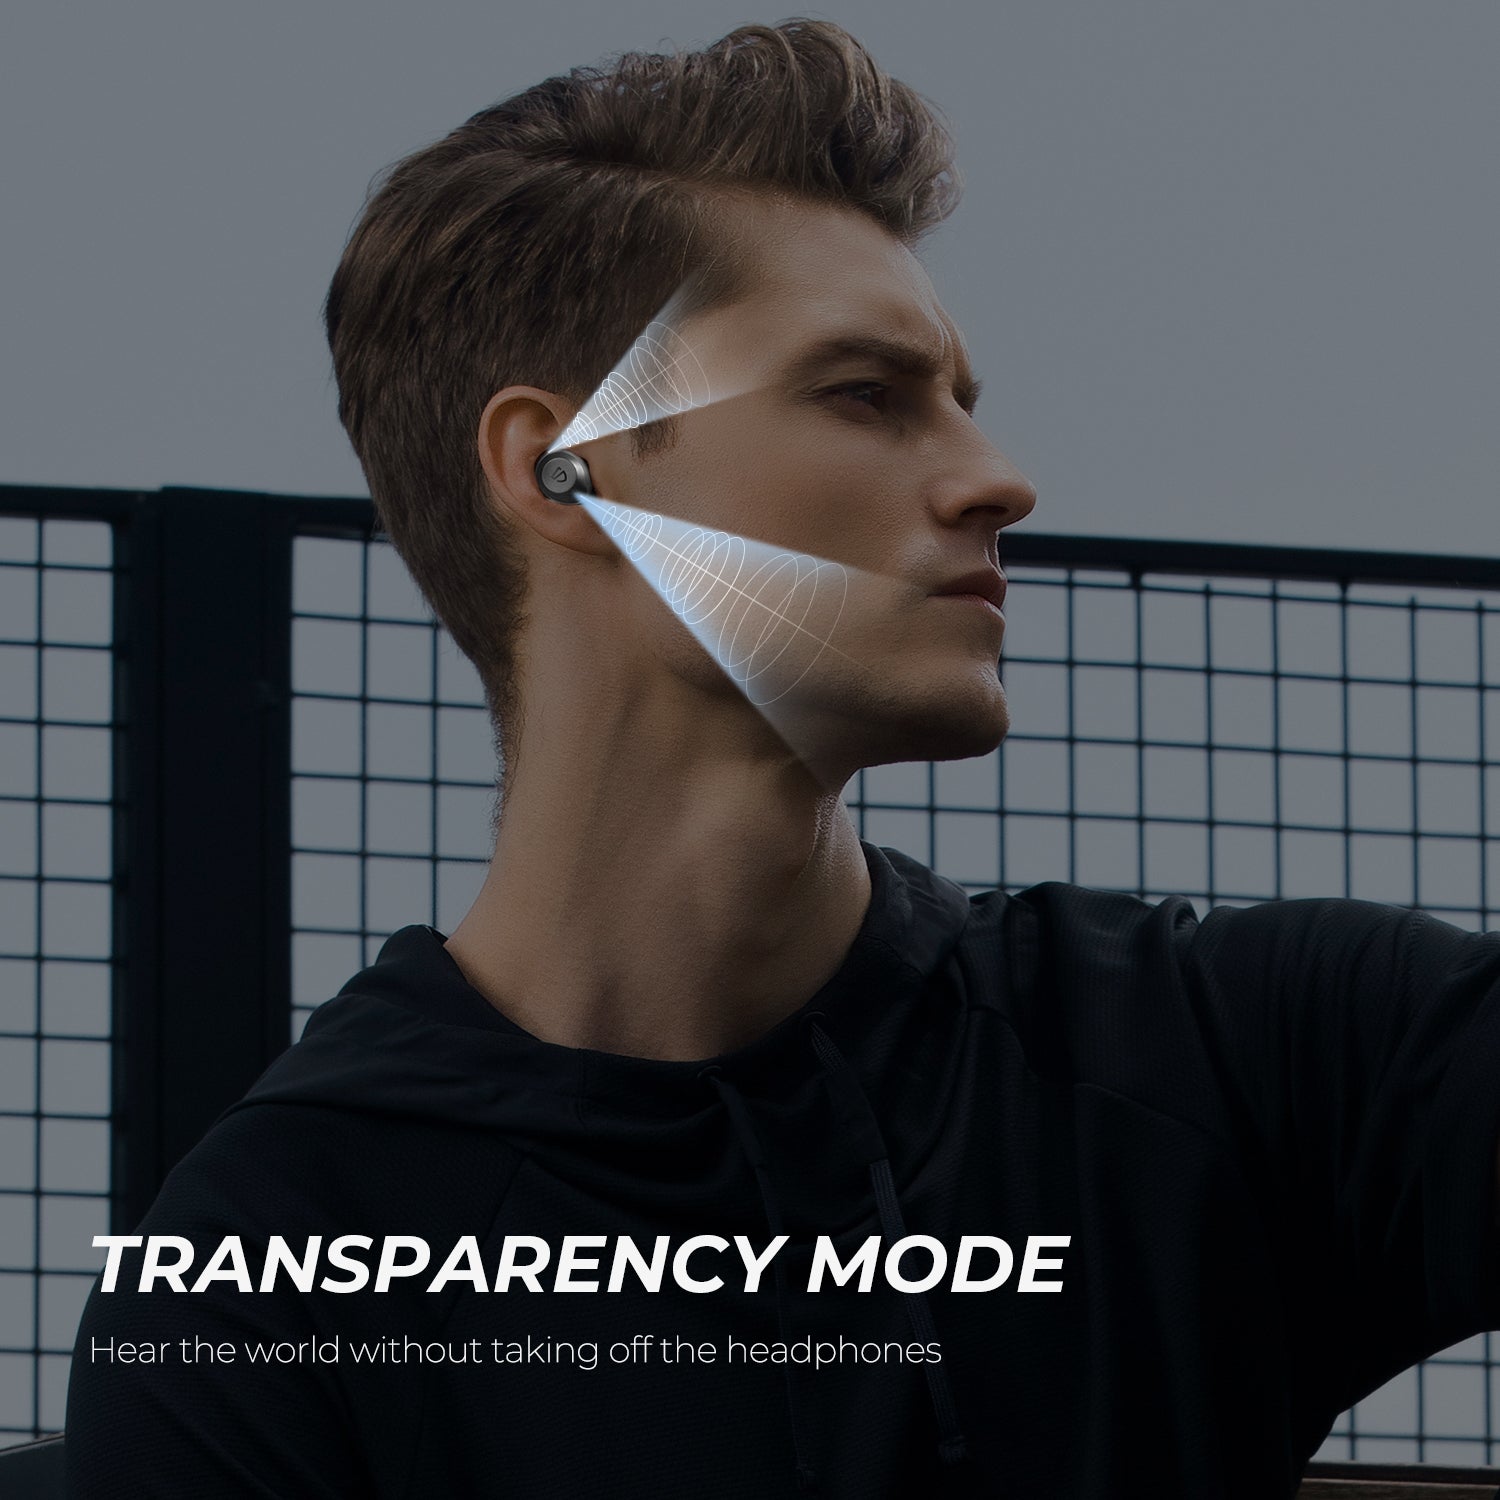 SOUNDPEATS T2 True Wireless Hybrid ANC In-Ear Earbuds - سماعة لاسلكية